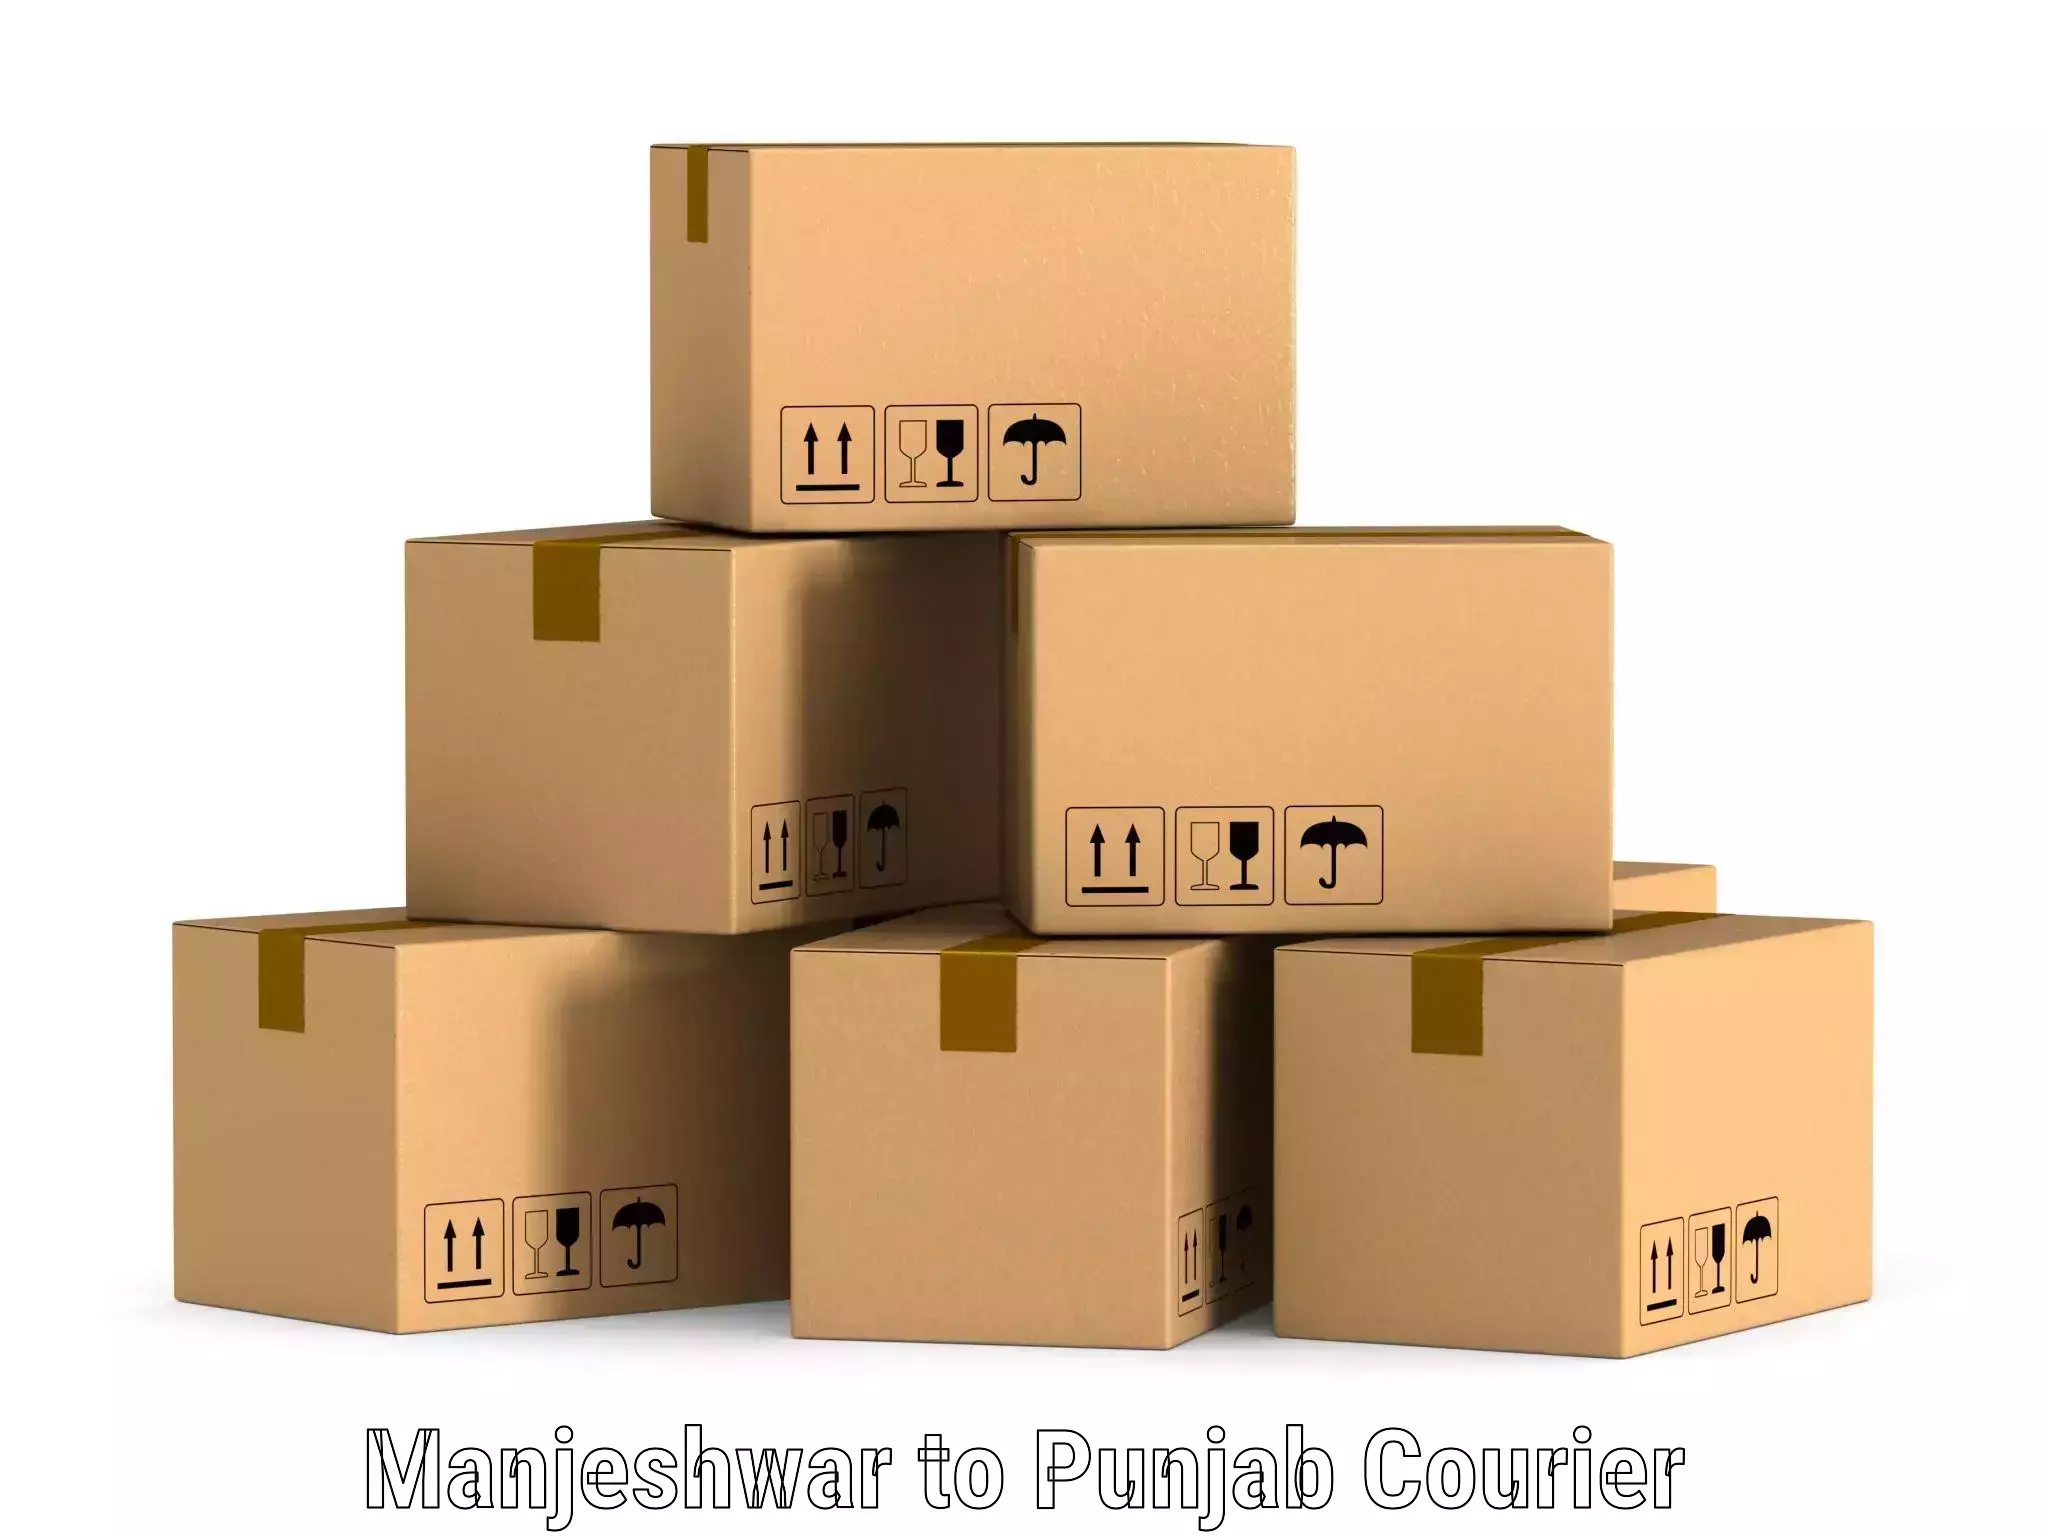 Fast shipping solutions Manjeshwar to Punjab